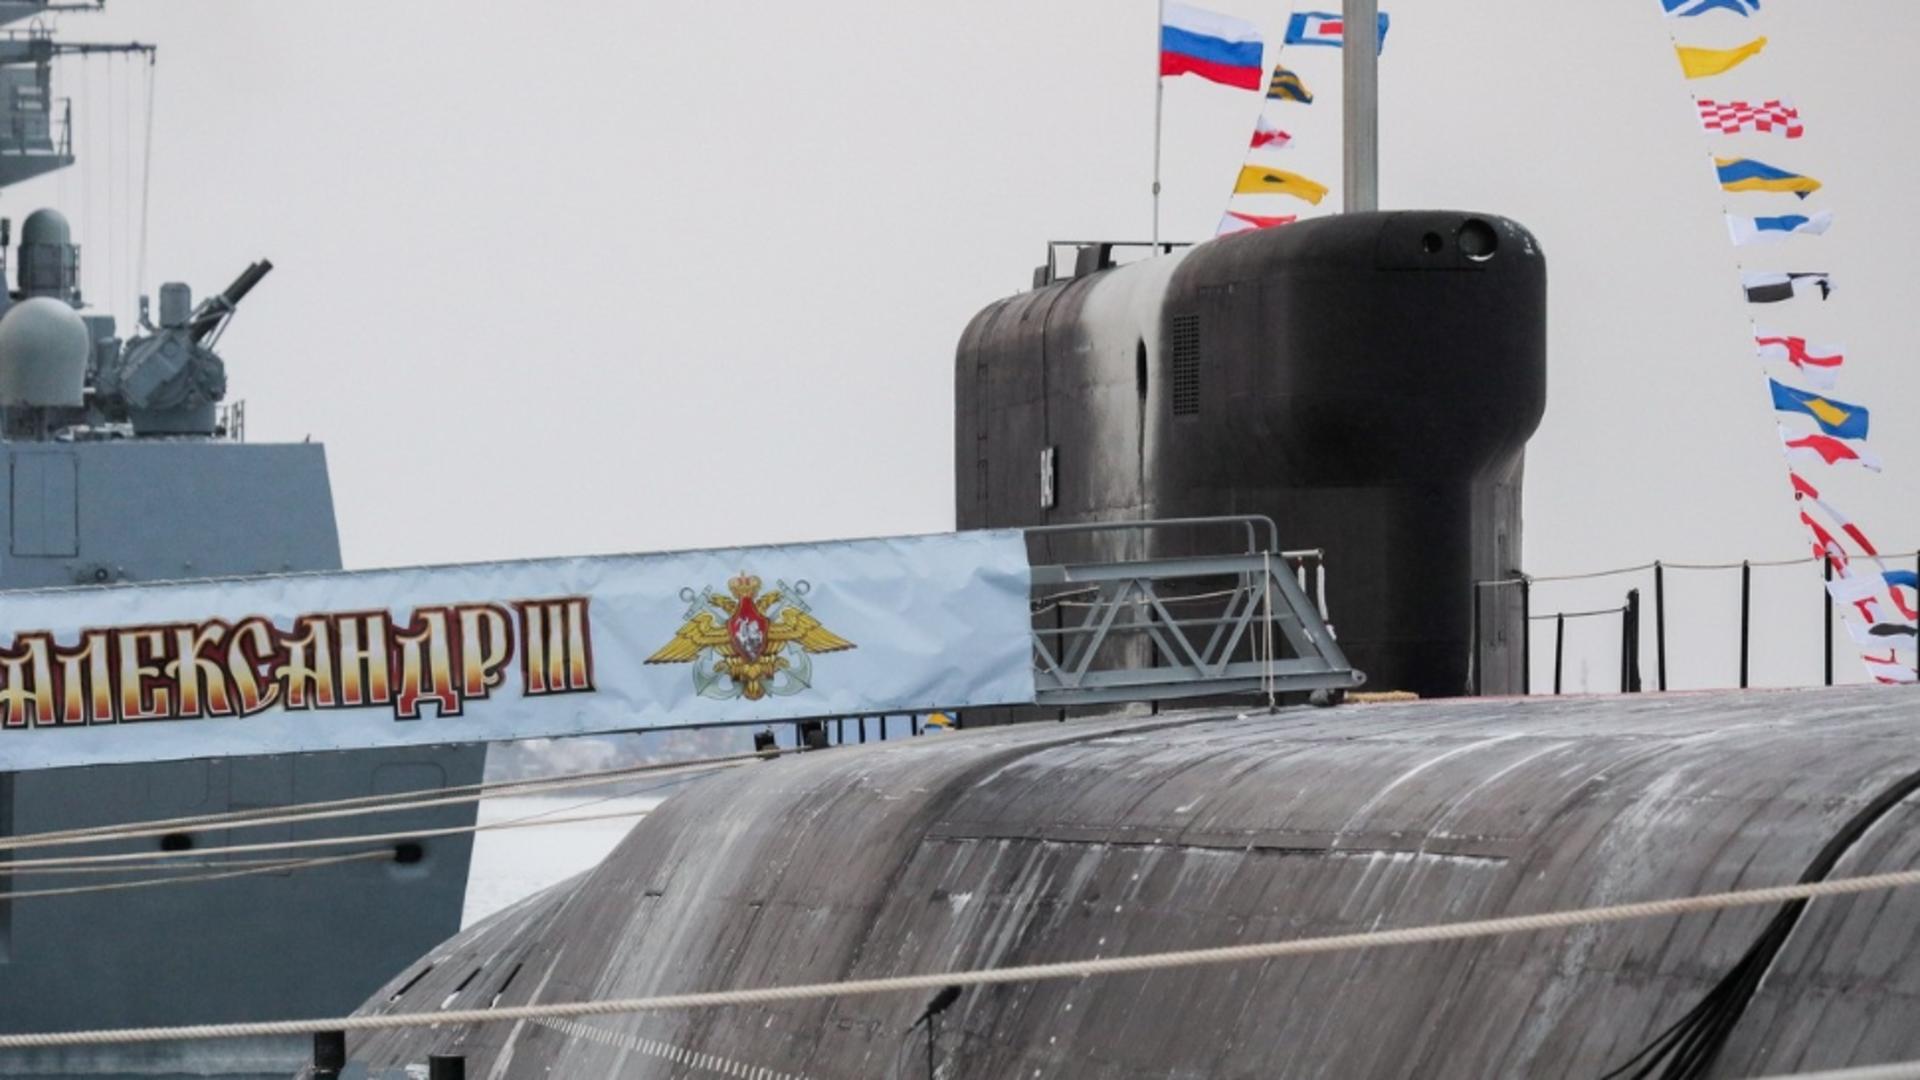 Kremlinul apasă pedala înarmării. Vladimir Putin a inaugurat două noi submarine nucleare care se vor alătura flotei ruse